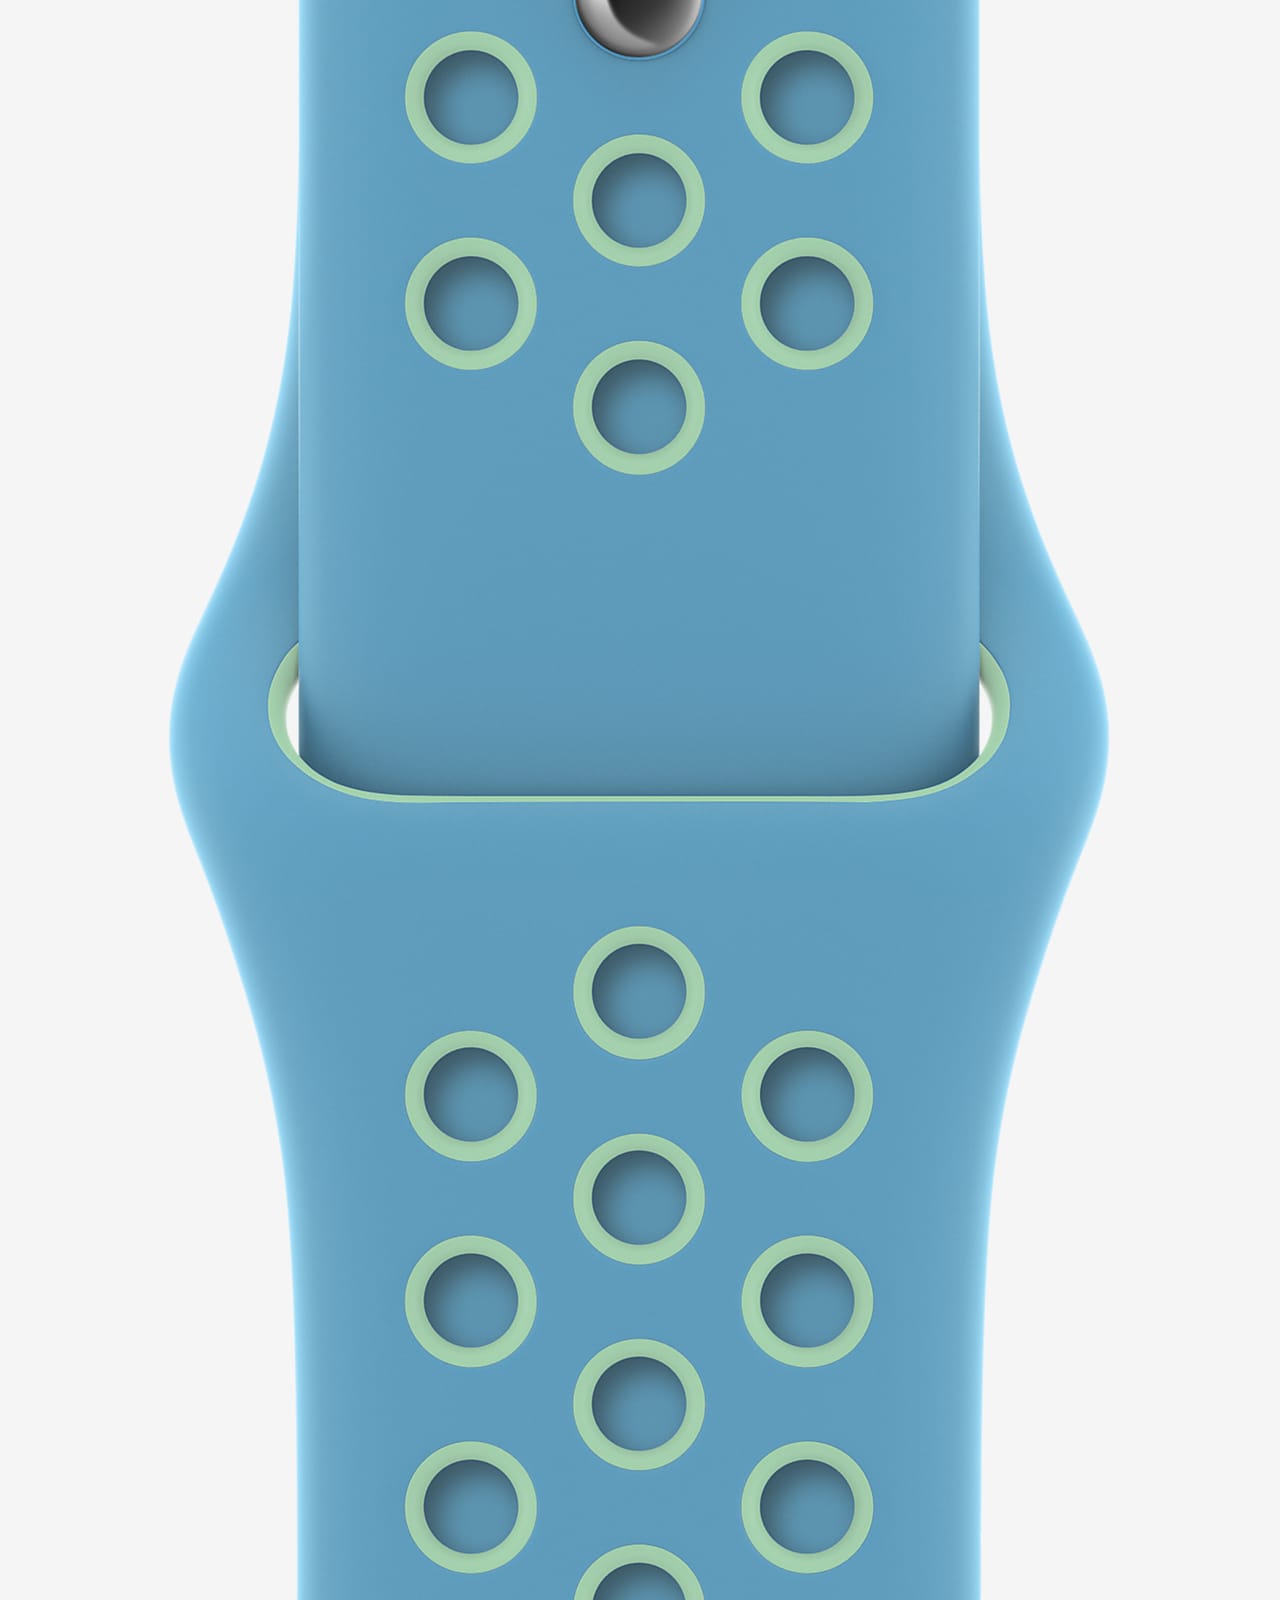 44 毫米氯蓝/光辉绿 Nike 运动表带 - 标准号